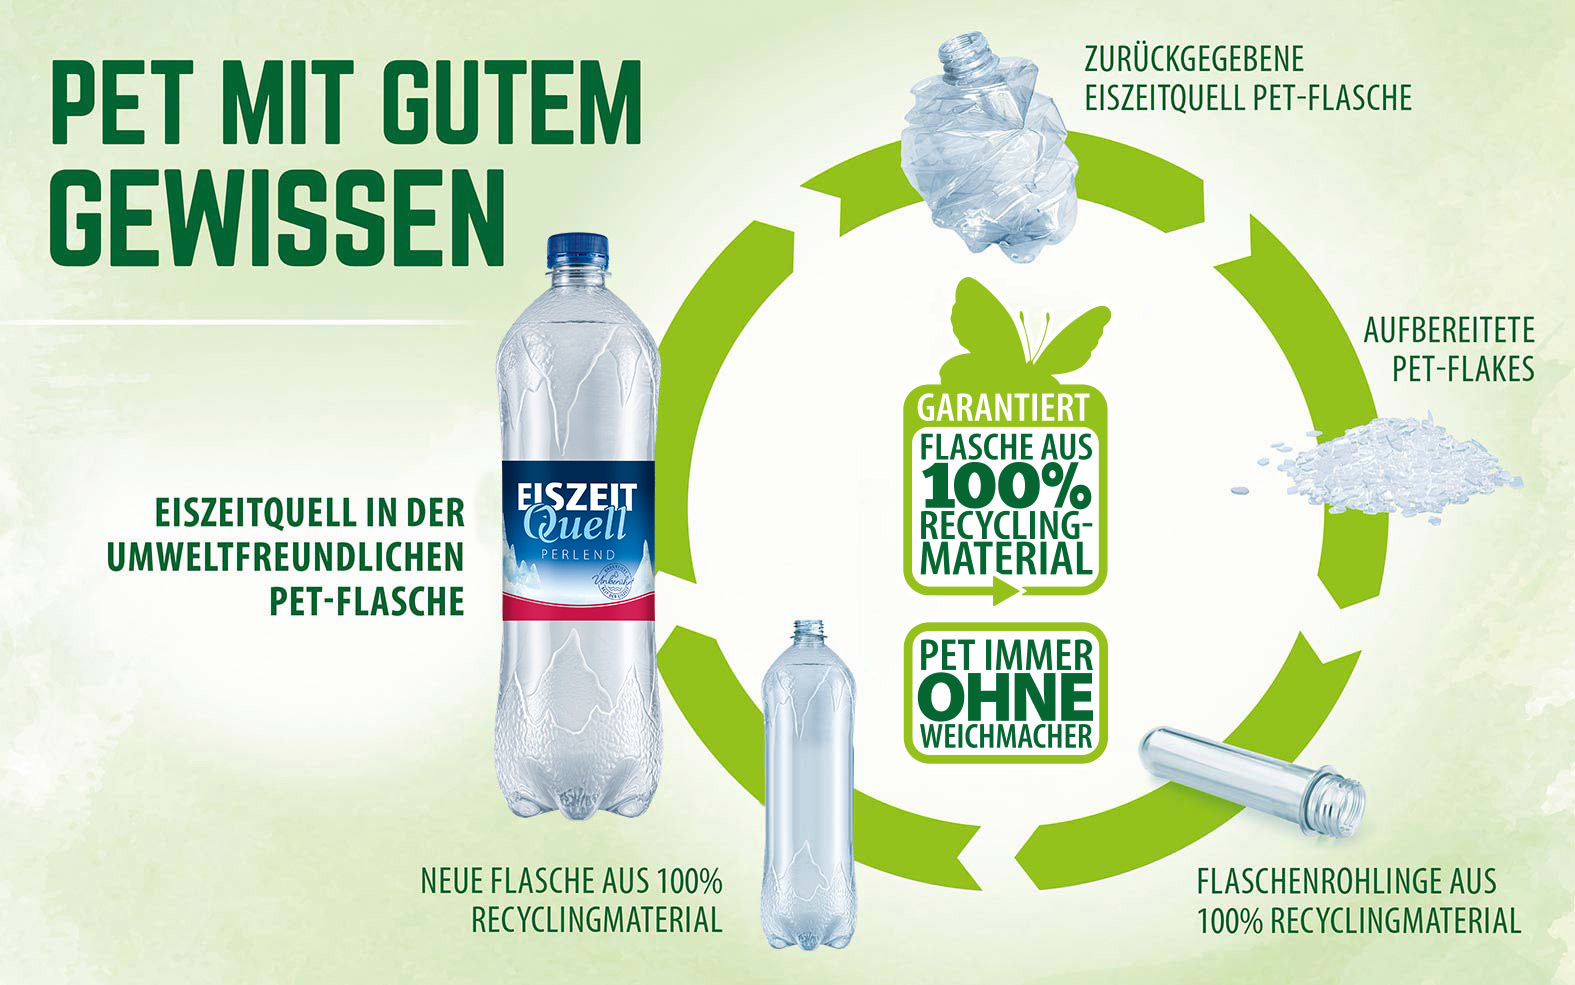 EiszeitQuell | PET-Flaschen aus 100% Recycling-Material